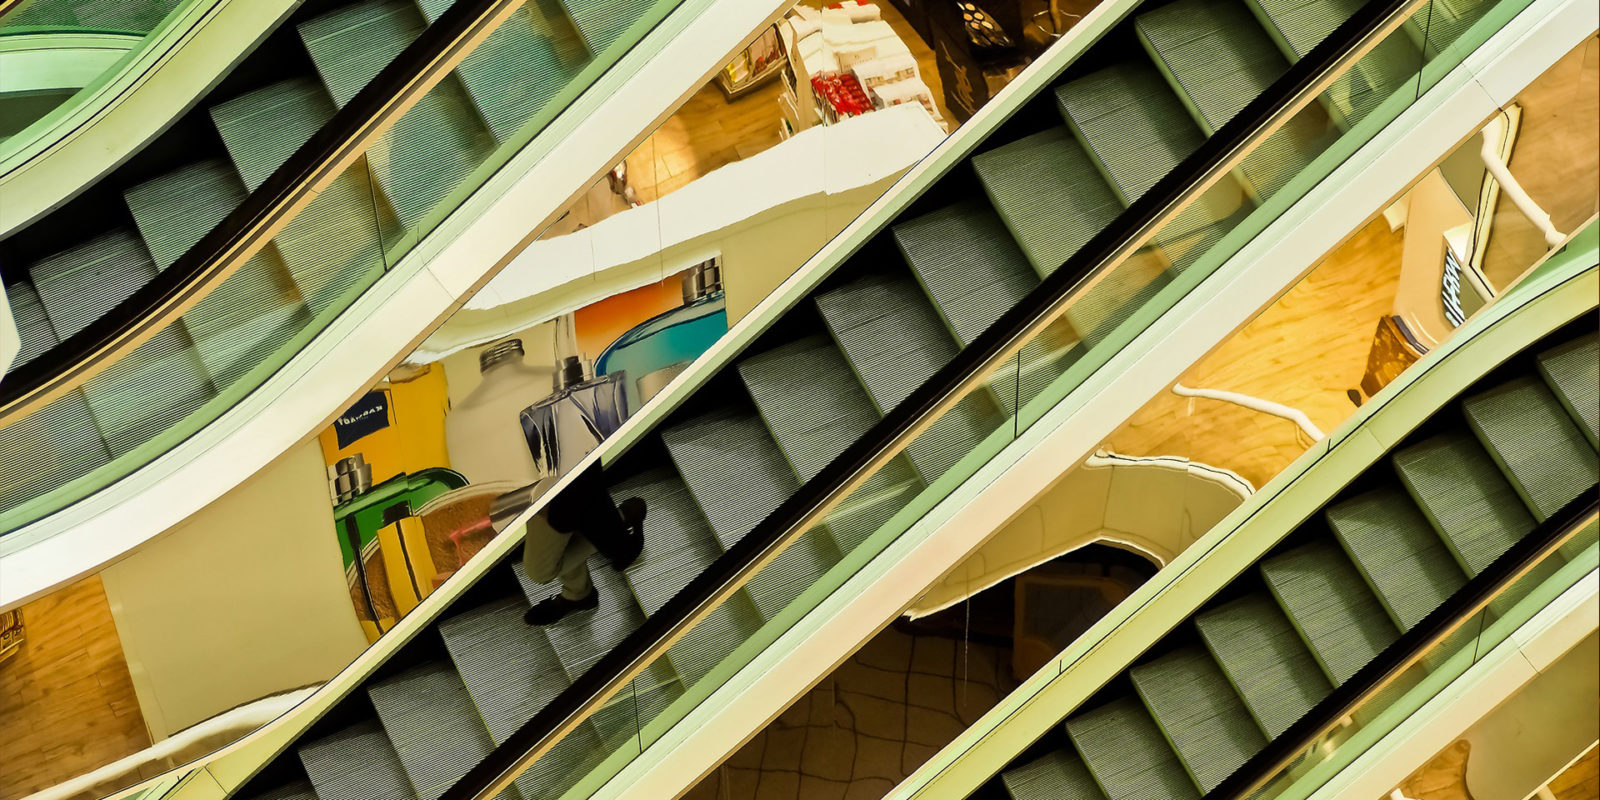 Escalators at a department store